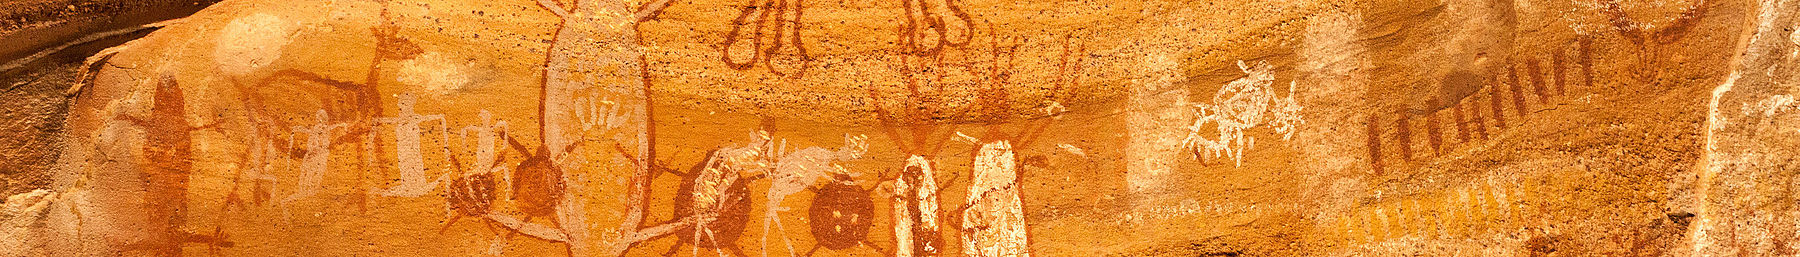 Serra da Capivara afiş Petroglyphs.jpg